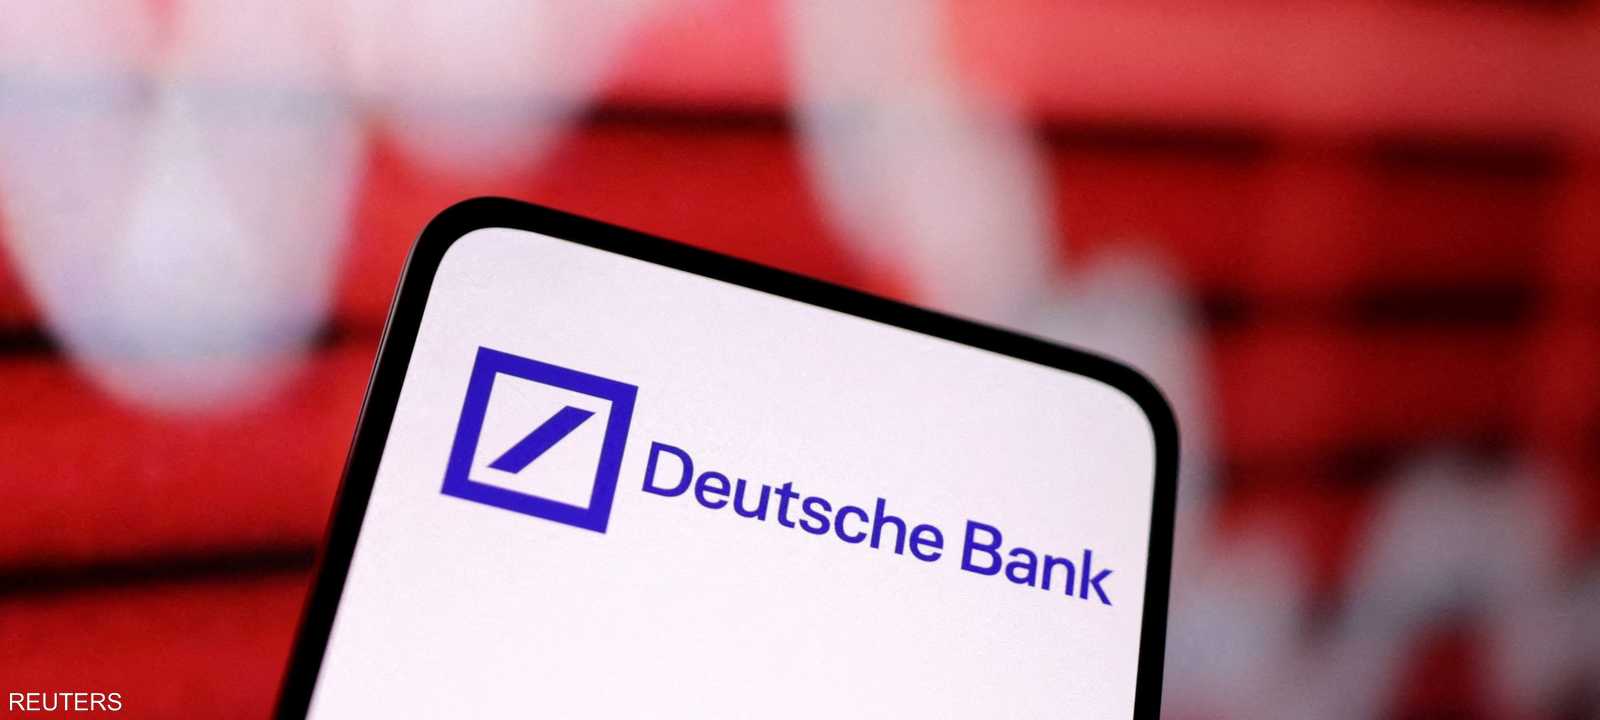 تهاوي سهم دويتشه بنك الألماني بأكثر من 13 بالمئة